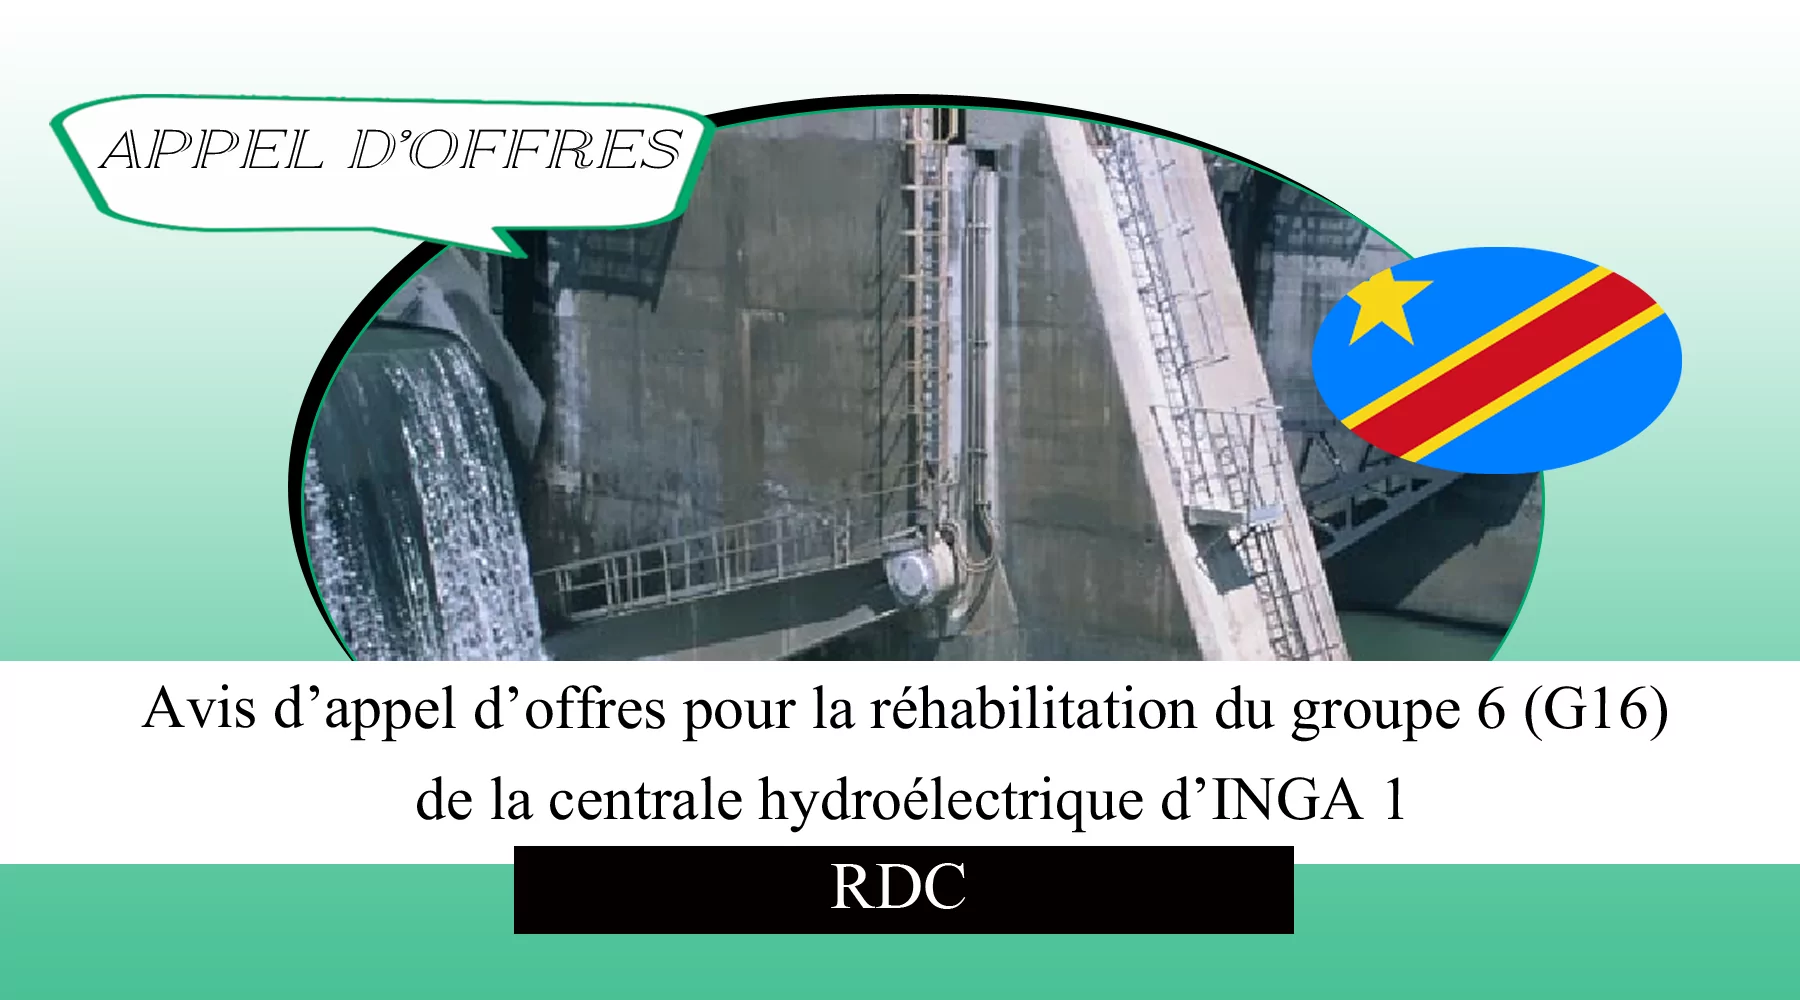 Avis d’appel d’offres pour la réhabilitation du groupe 6 (G16) de la centrale hydroélectrique d’INGA 1, RDC